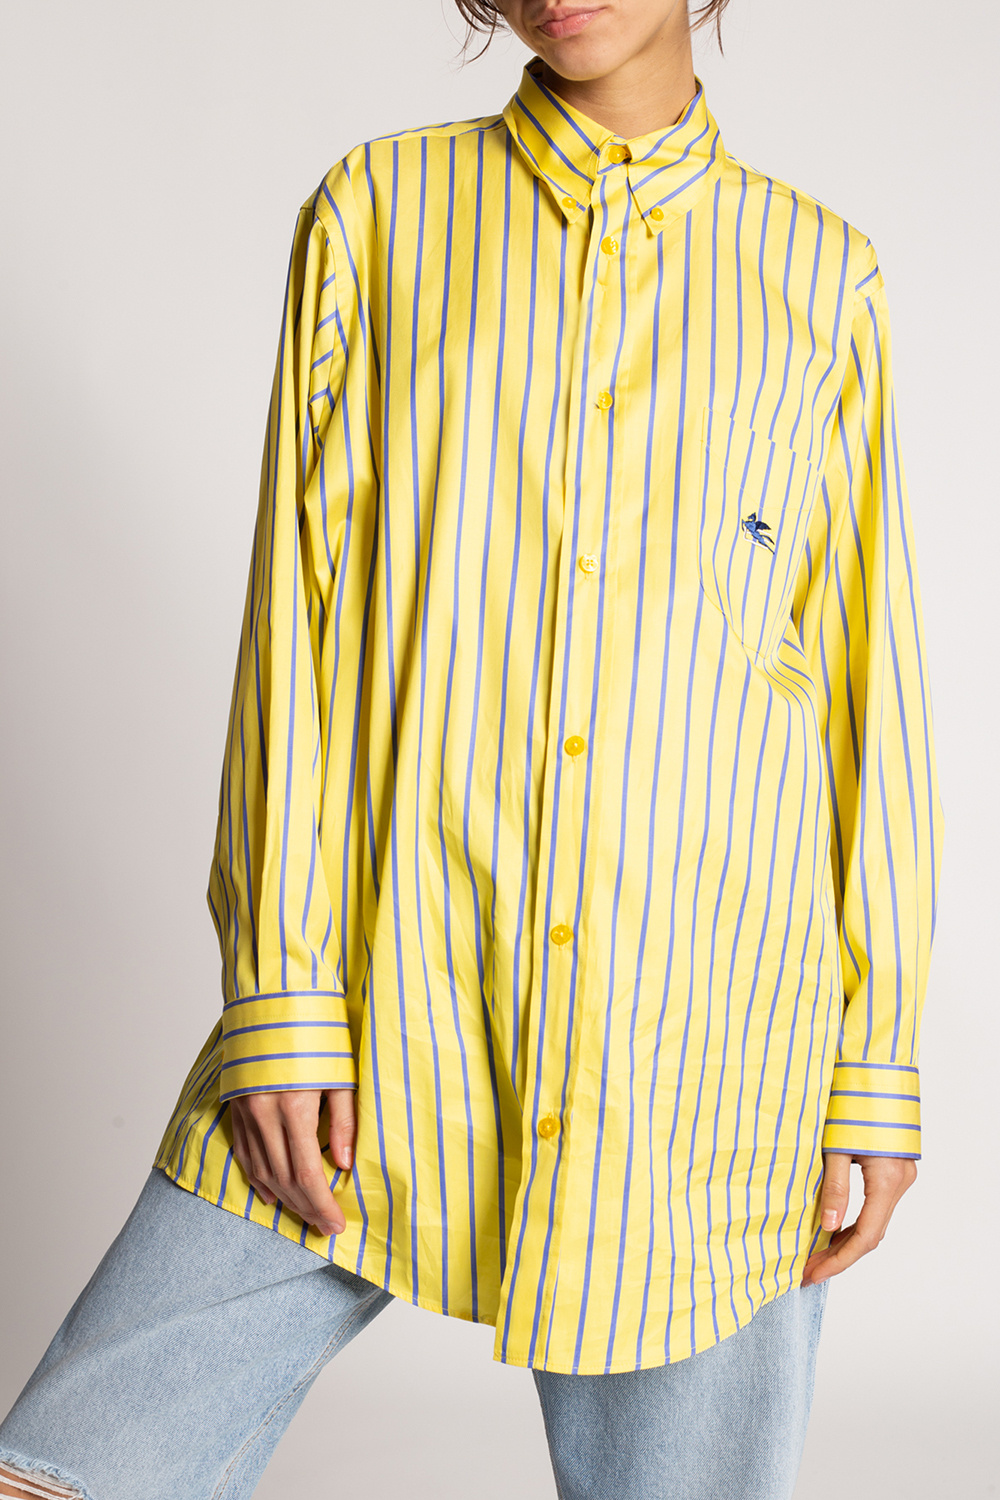 Etro Striped shirt | Women's Clothing | IetpShops